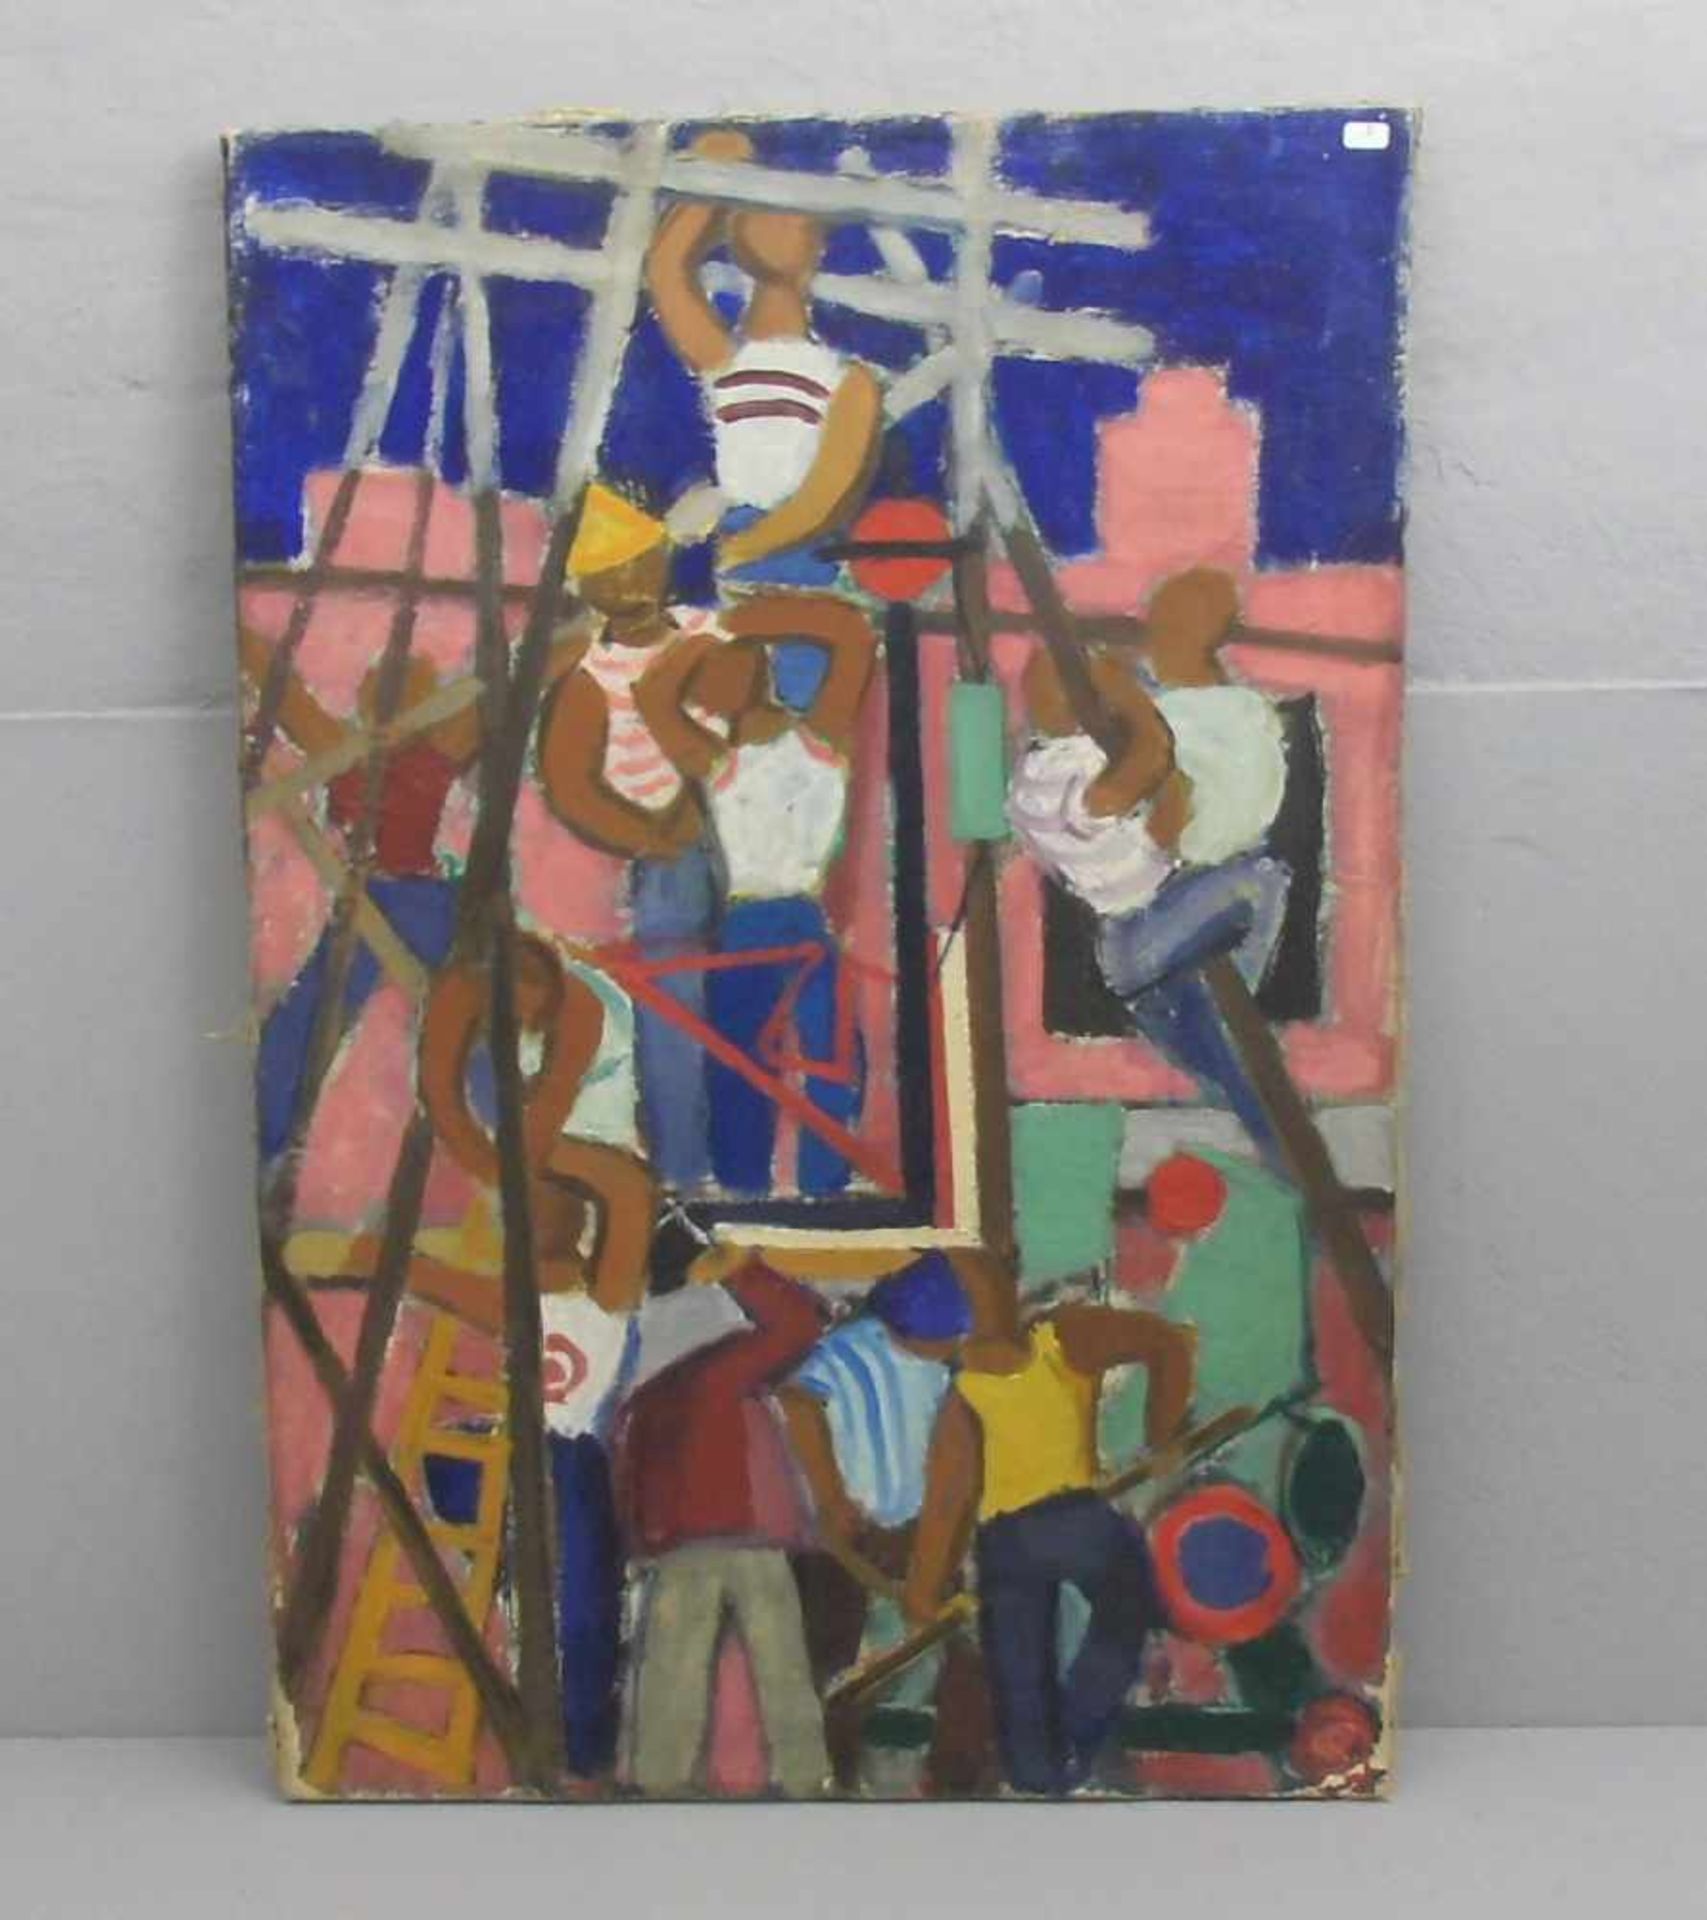 ANONYMUS (Maler des 19./20. Jh.), Gemälde / painting: "Baustelle mit Gerüstbauern", Öl auf